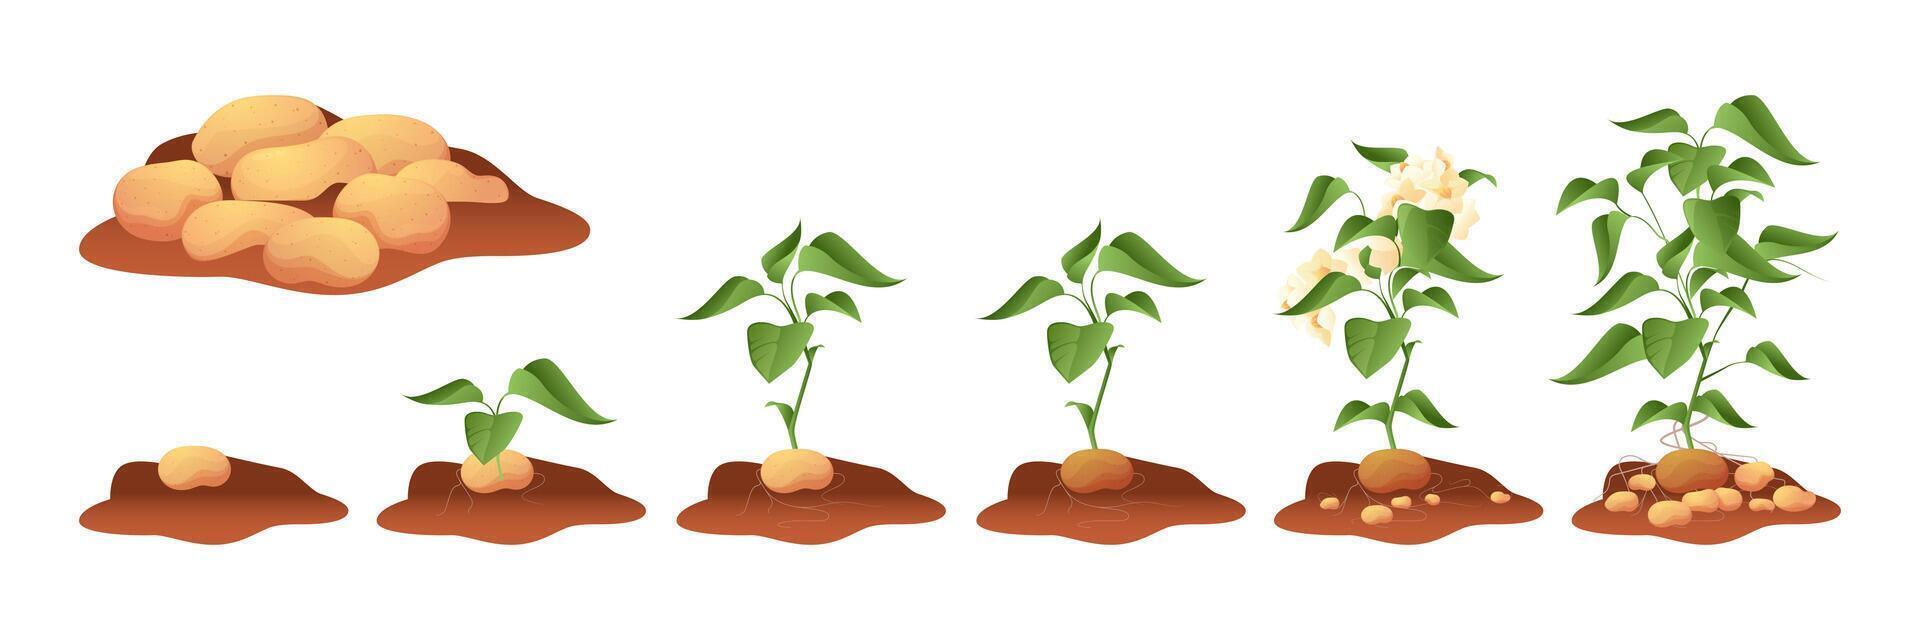 patata creciente. tuberoso cosecha con vástago raíces hoja en suelo, vegetal planta crecer ciclo proceso desde semilla a maduro agricultura concepto. vector ilustración